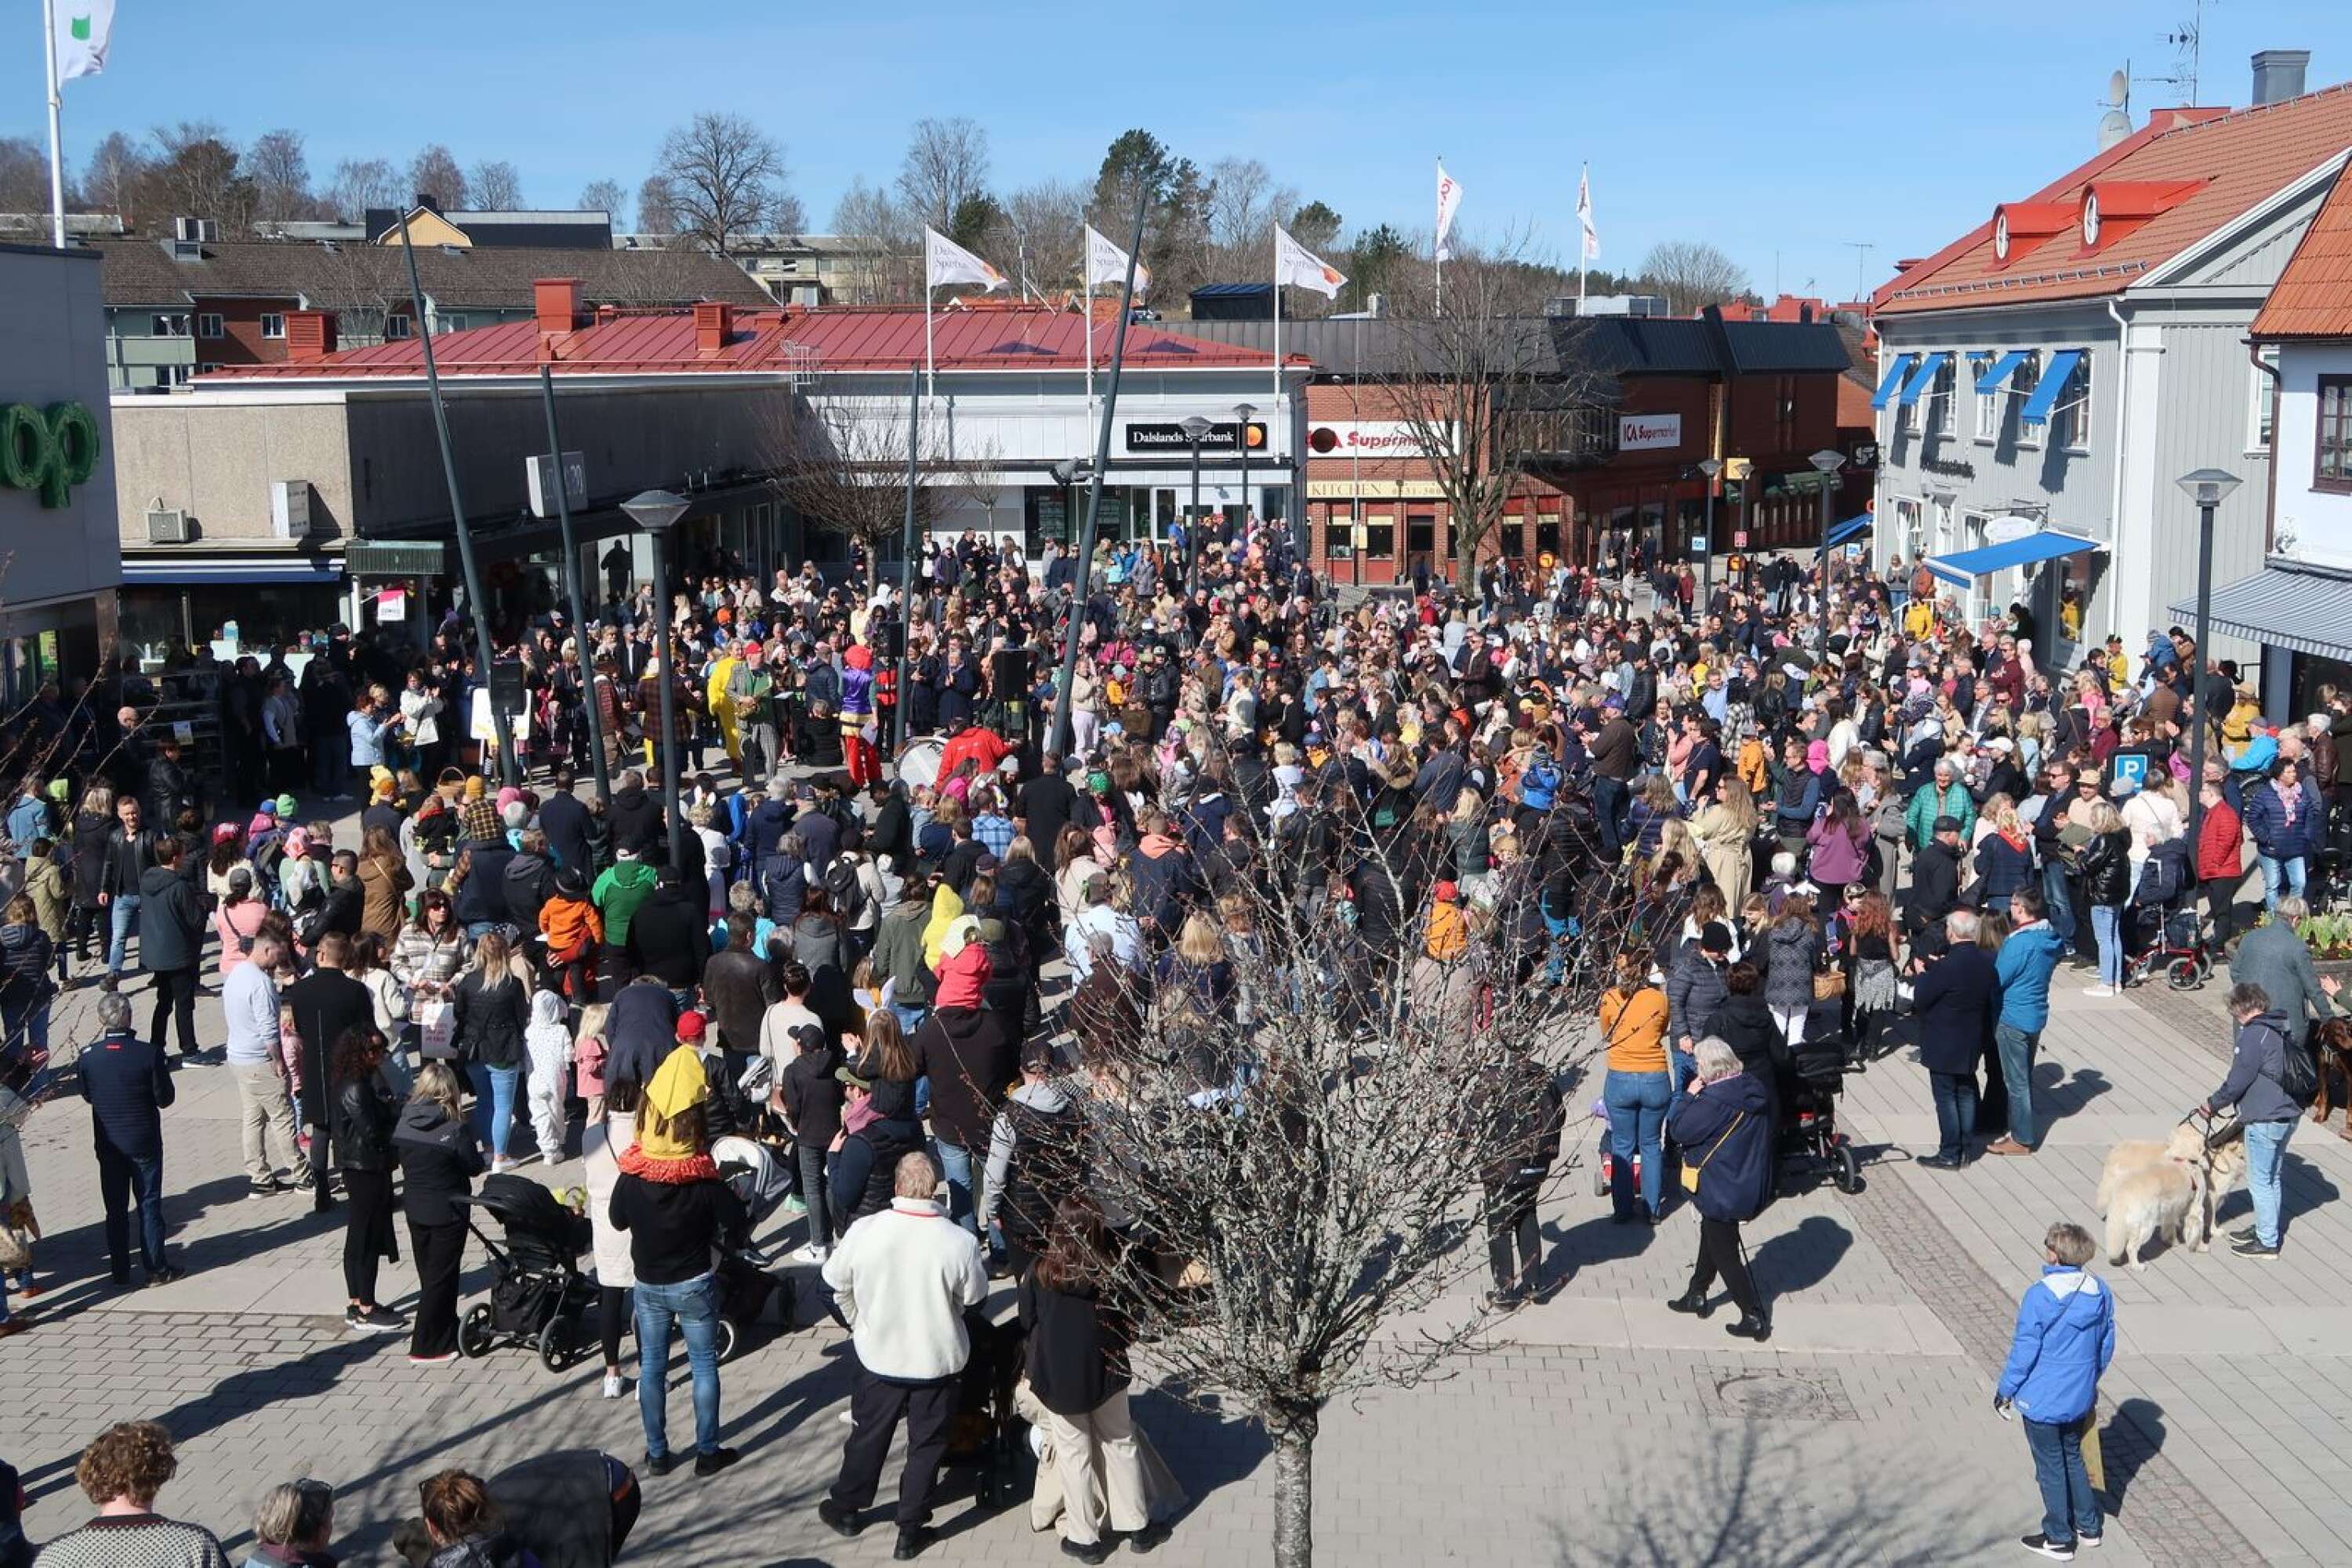 Hundratals människor samlades runt scenen på Nygårdstorget.